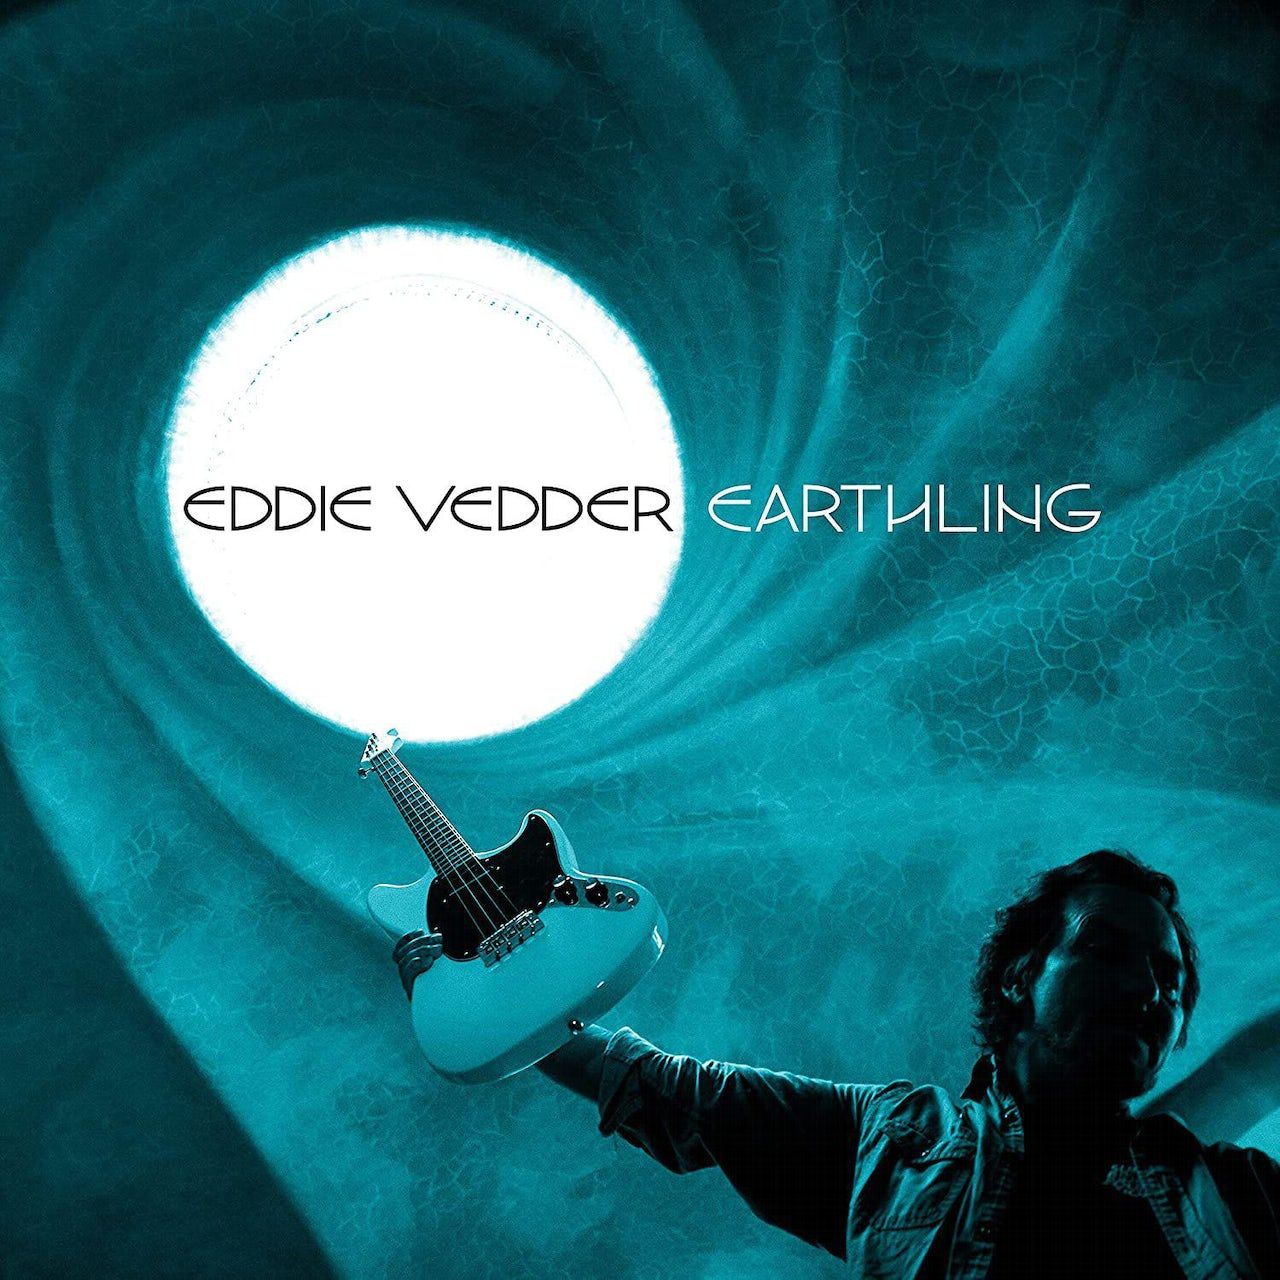 harris eddie виниловая пластинка harris eddie bossa nova 0602445254286, Виниловая пластинка Vedder, Eddie, Earthling